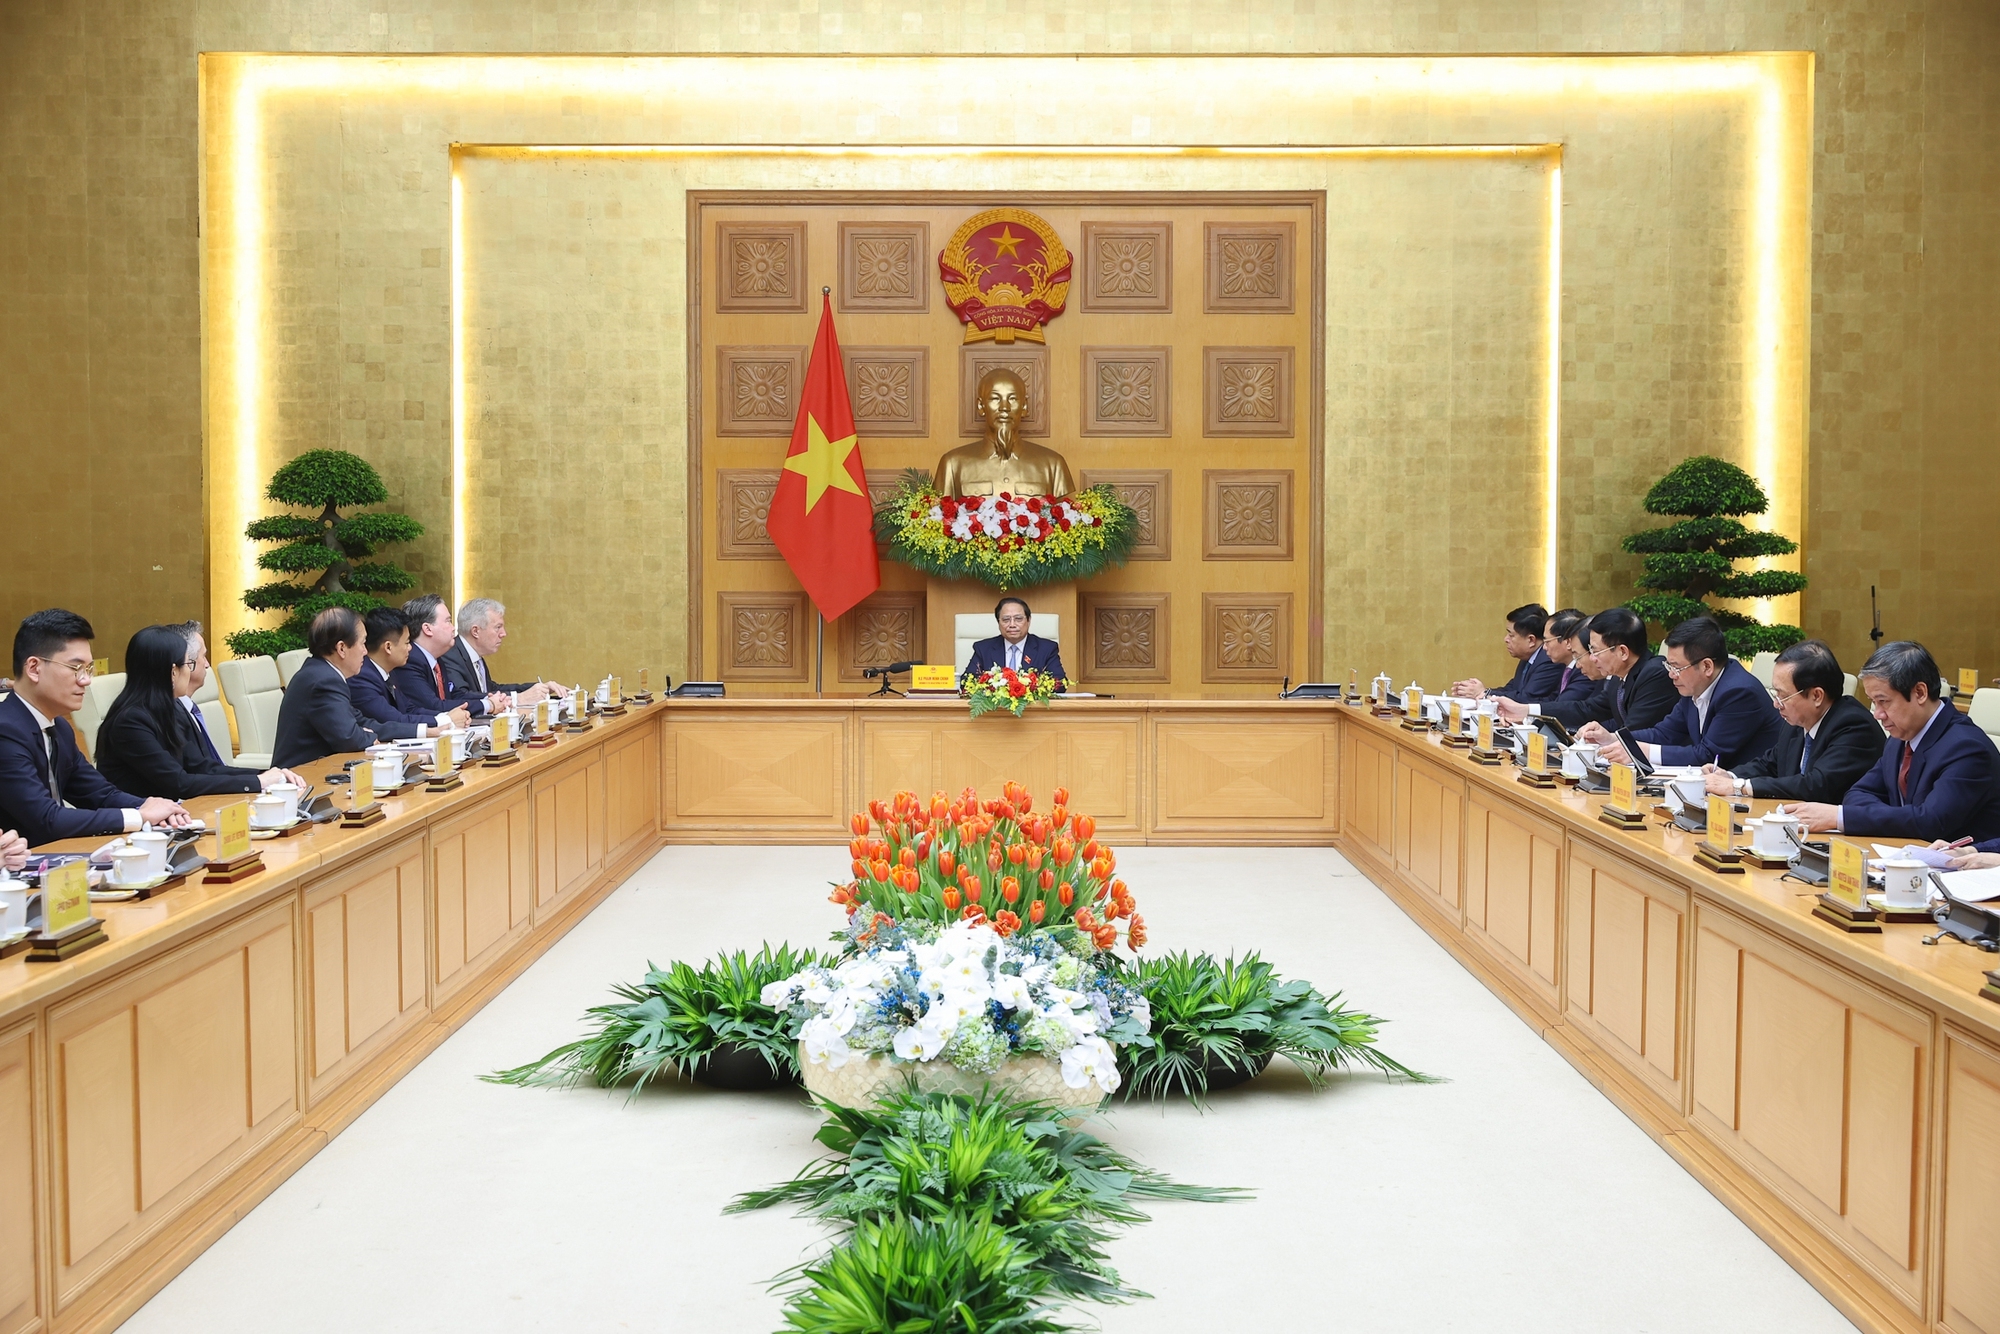 Chính phủ Việt Nam cam kết "3 bảo đảm", "3 cùng", để hỗ trợ doanh nghiệp Hoa Kỳ tham gia đầu tư, kinh doanh